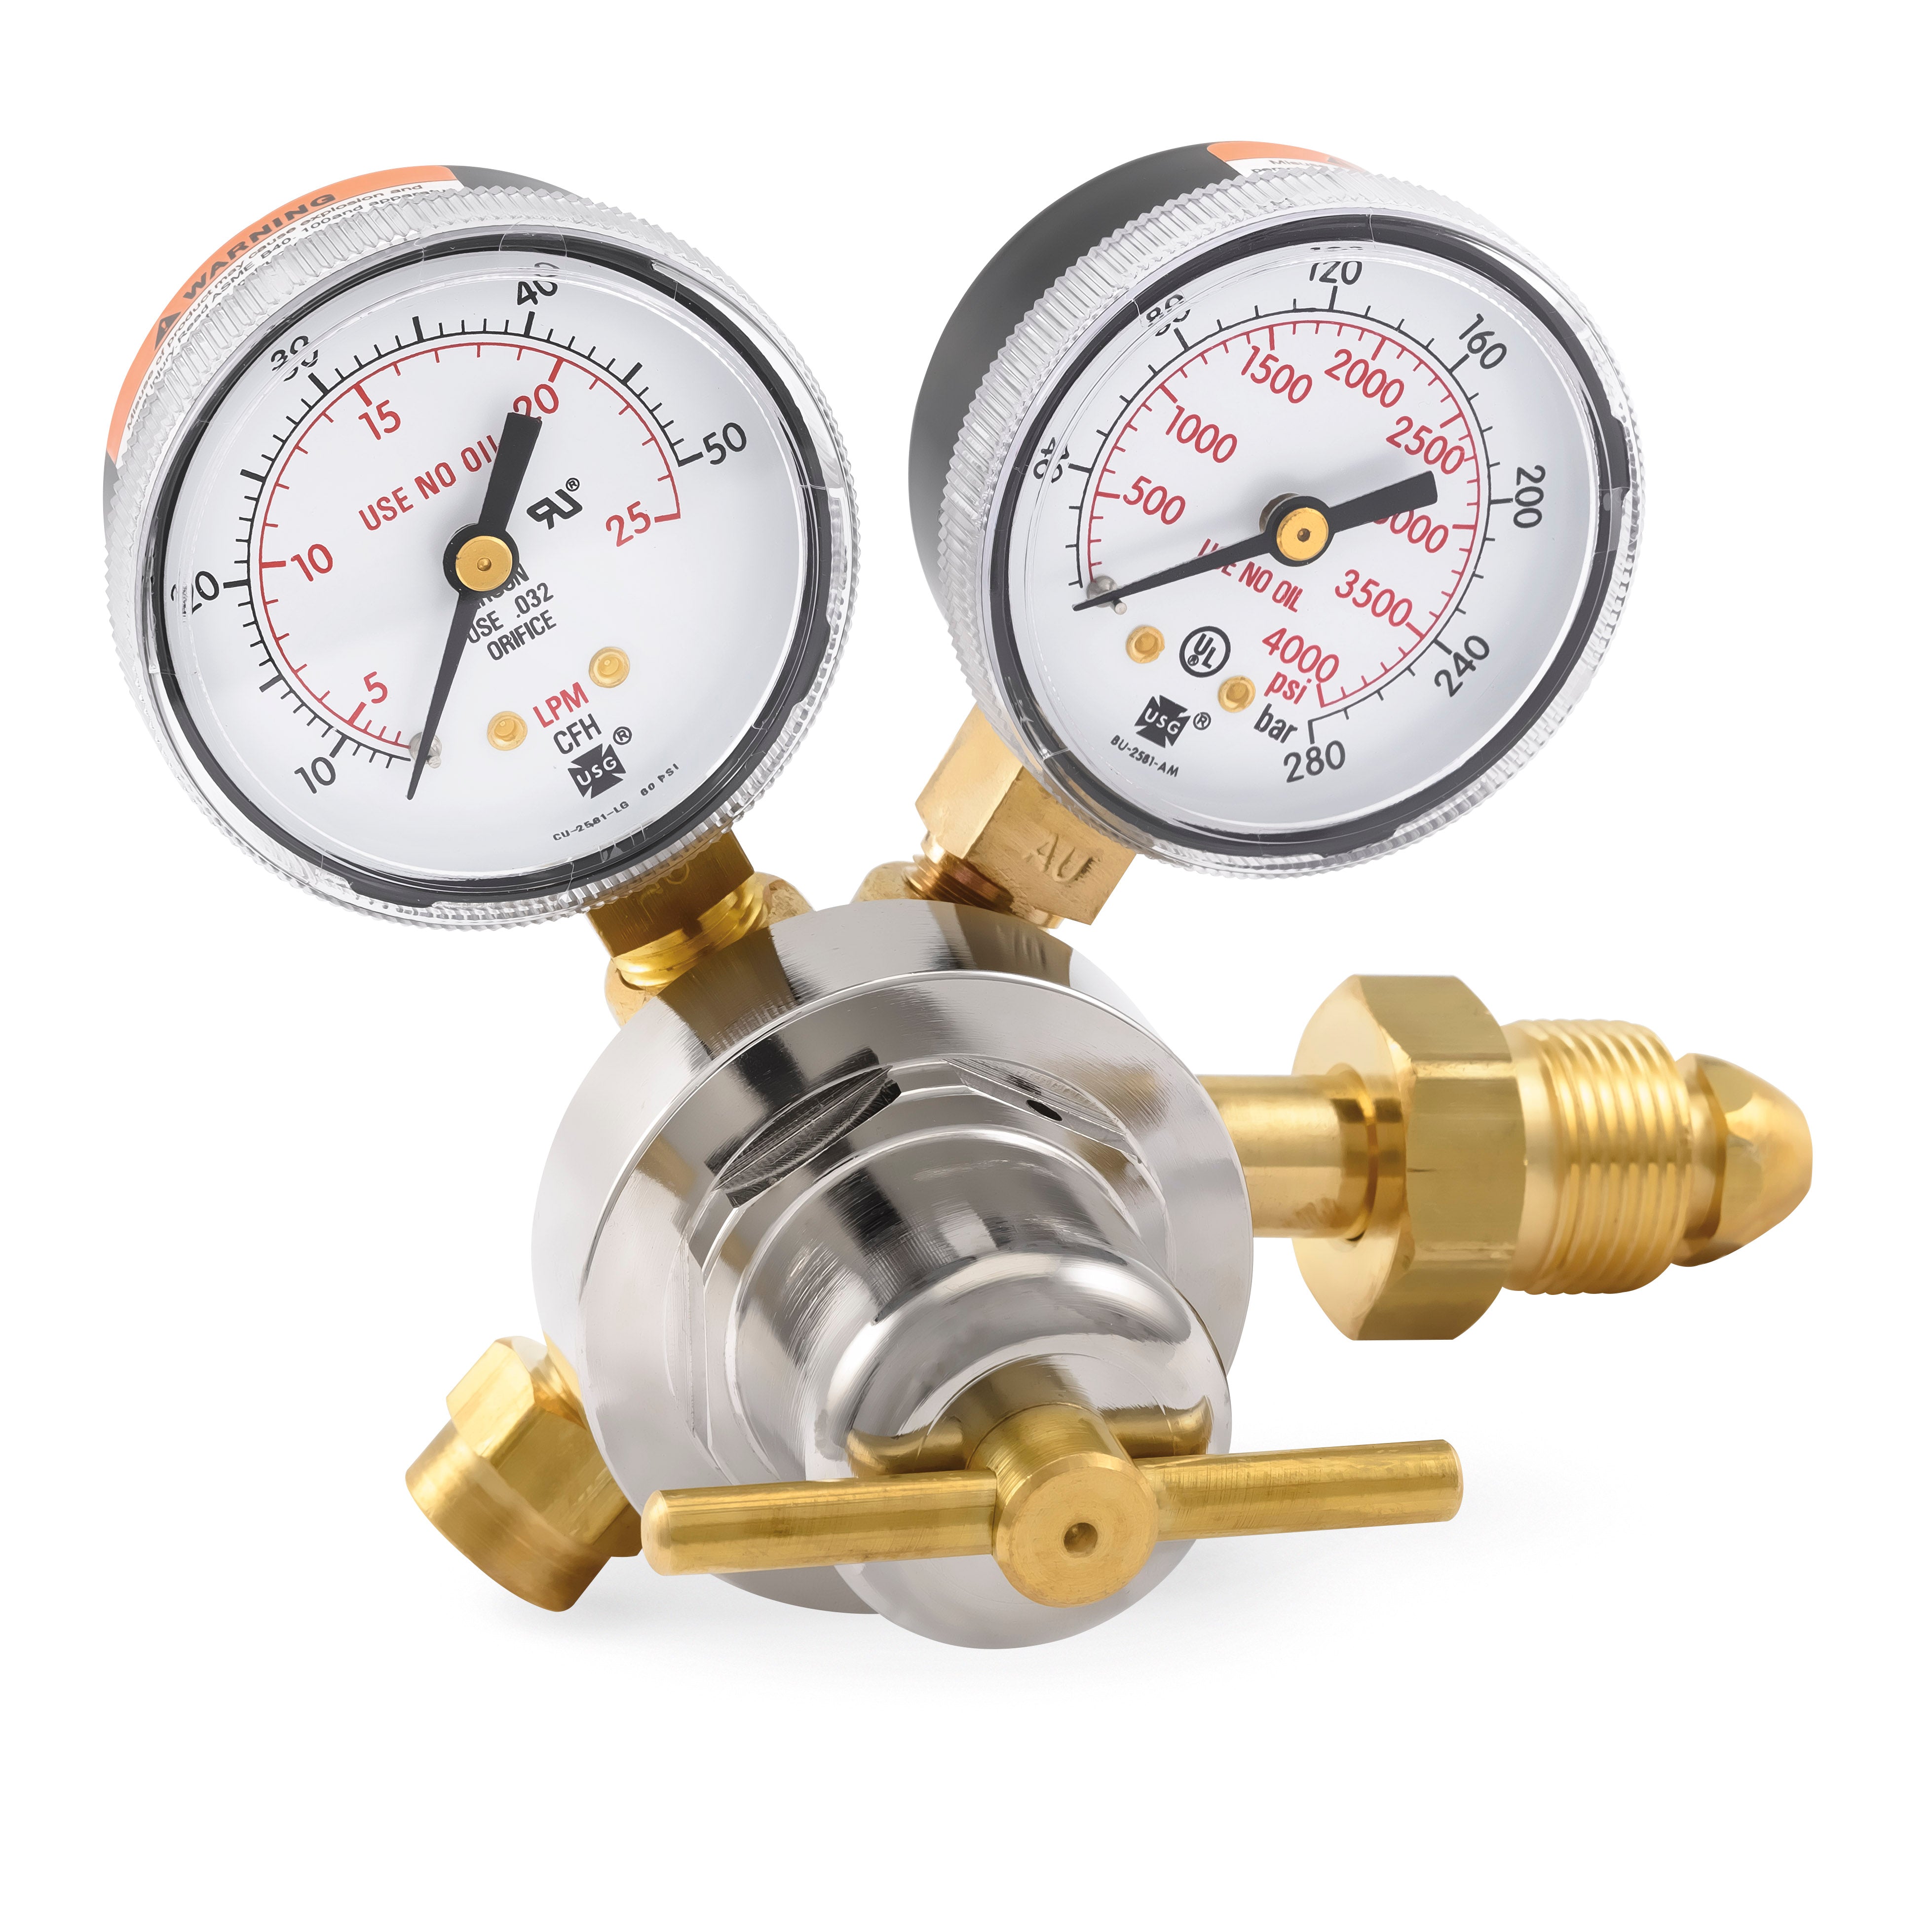 Régulateur d'argon Brass pressure reducer flowmeter gas regulator